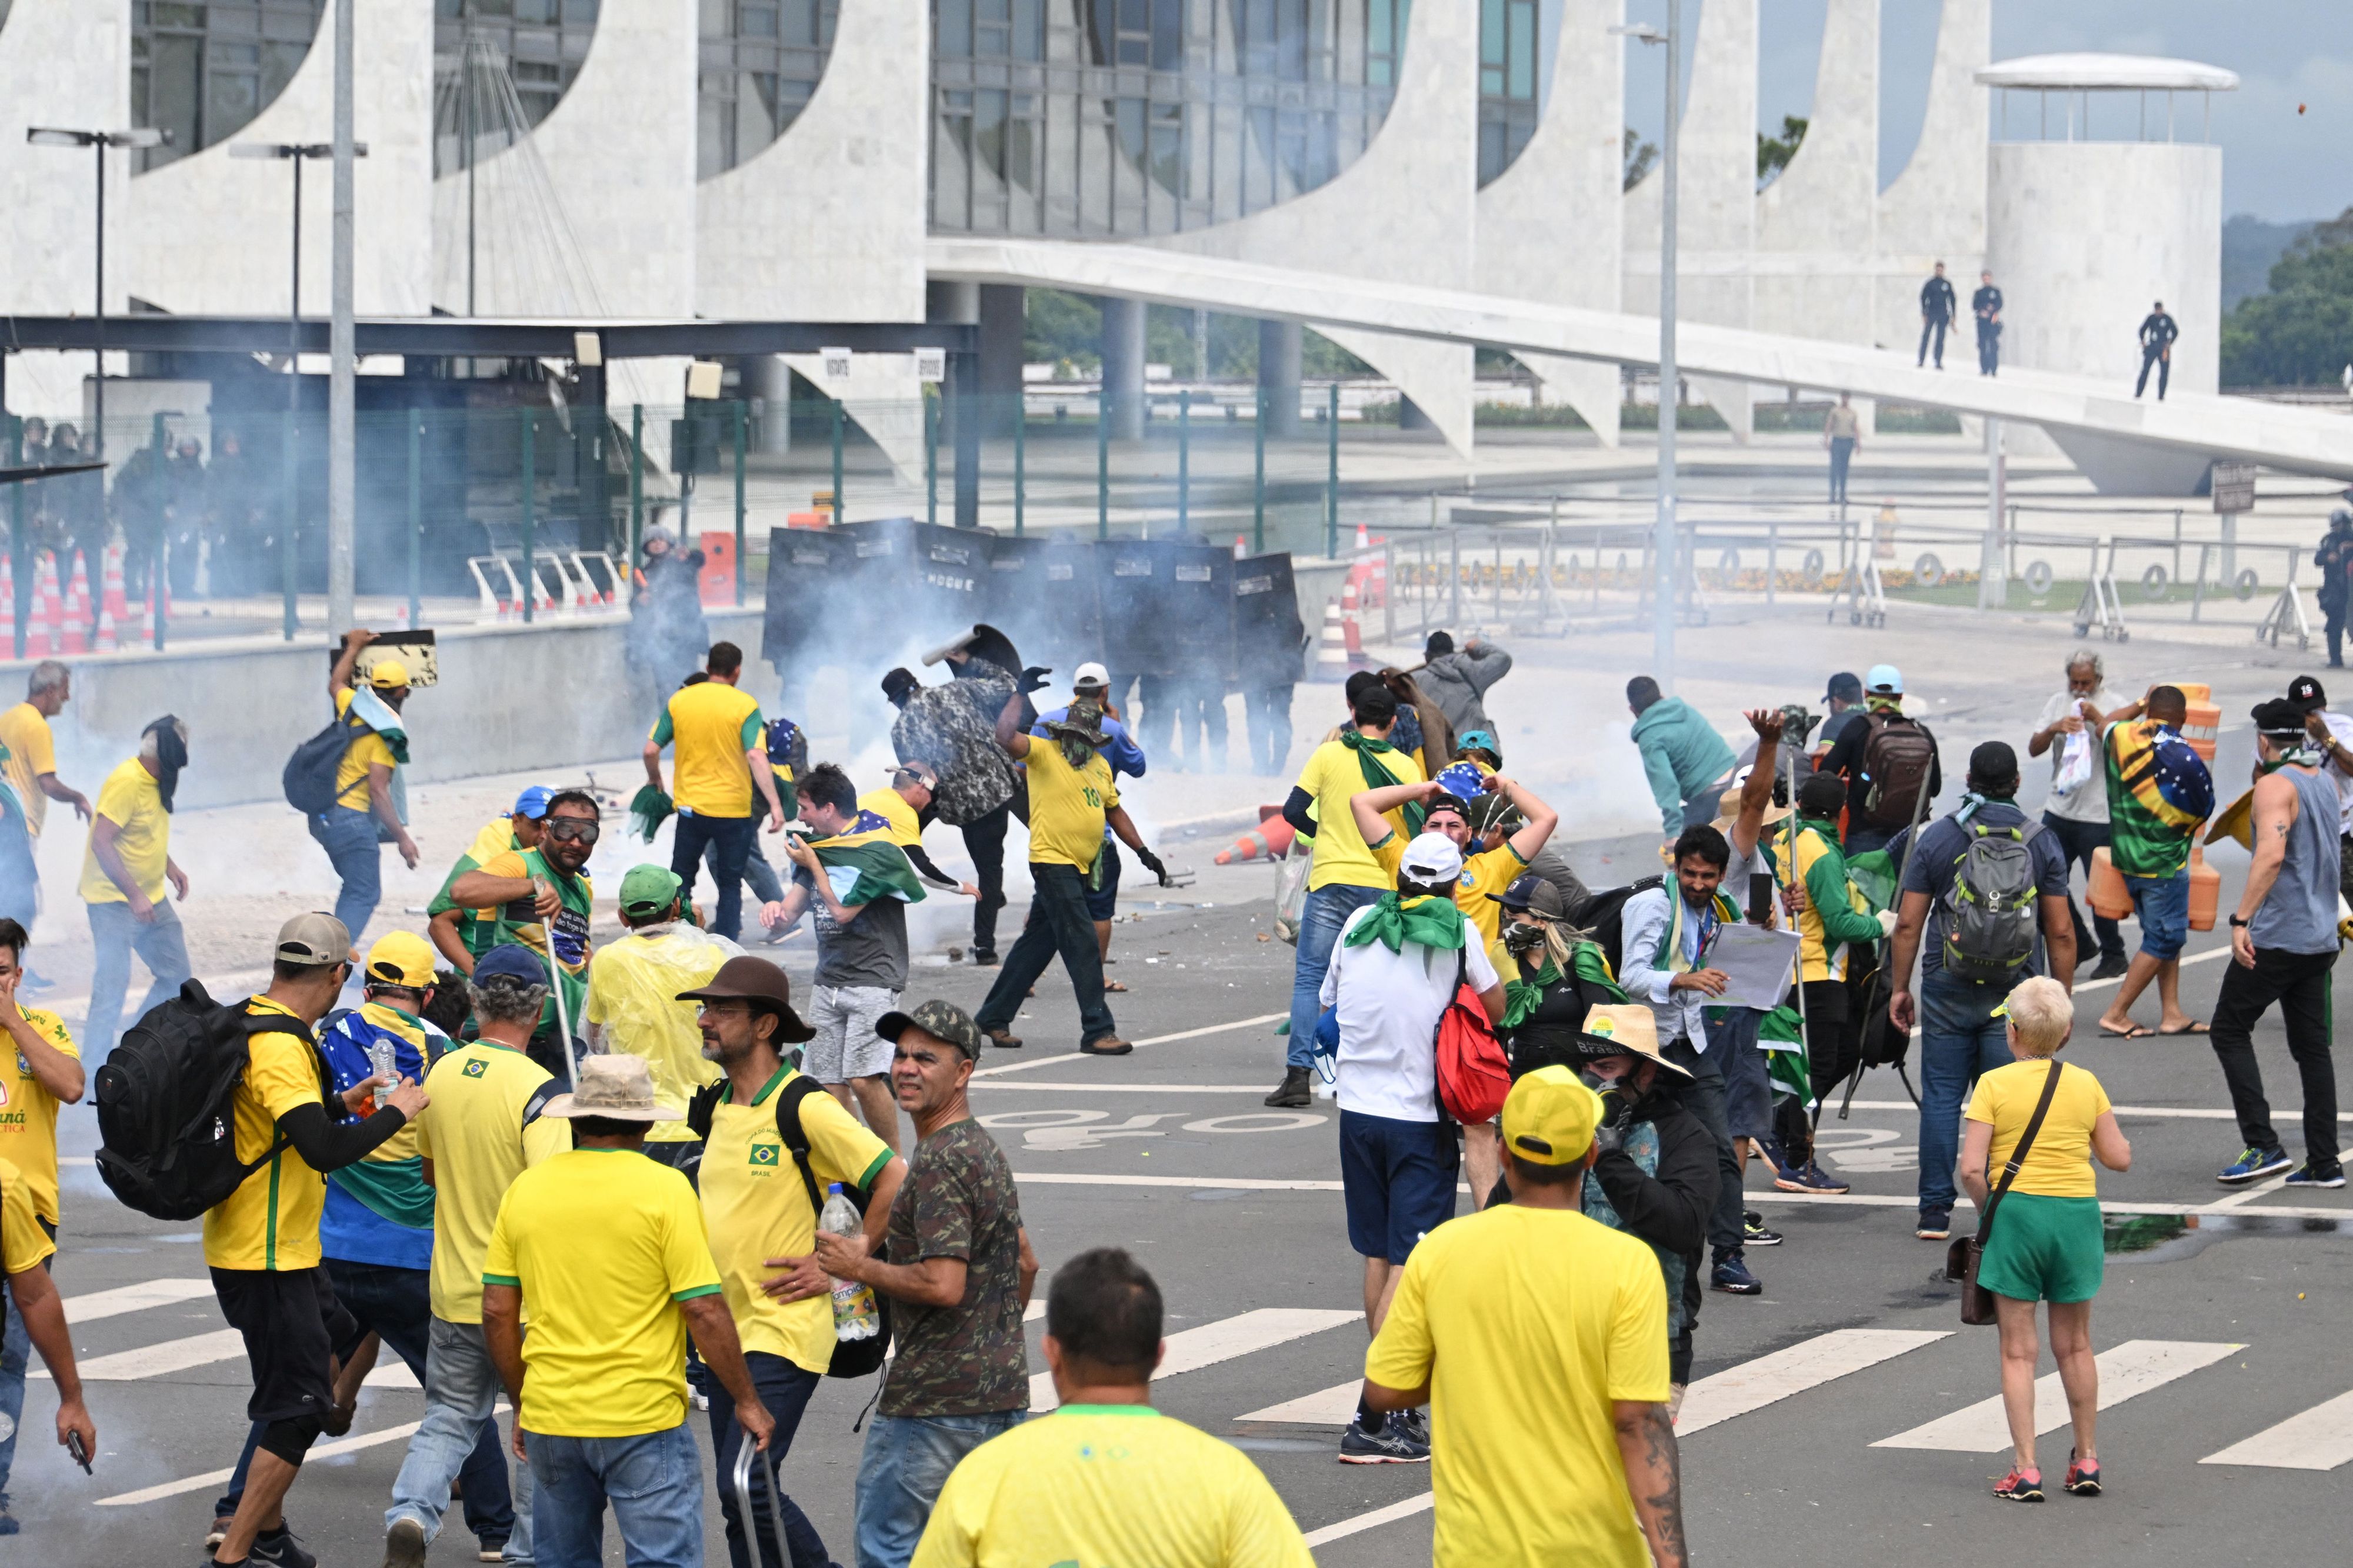 Brazil network ends Rio soccer deal over new Bolsonaro rule